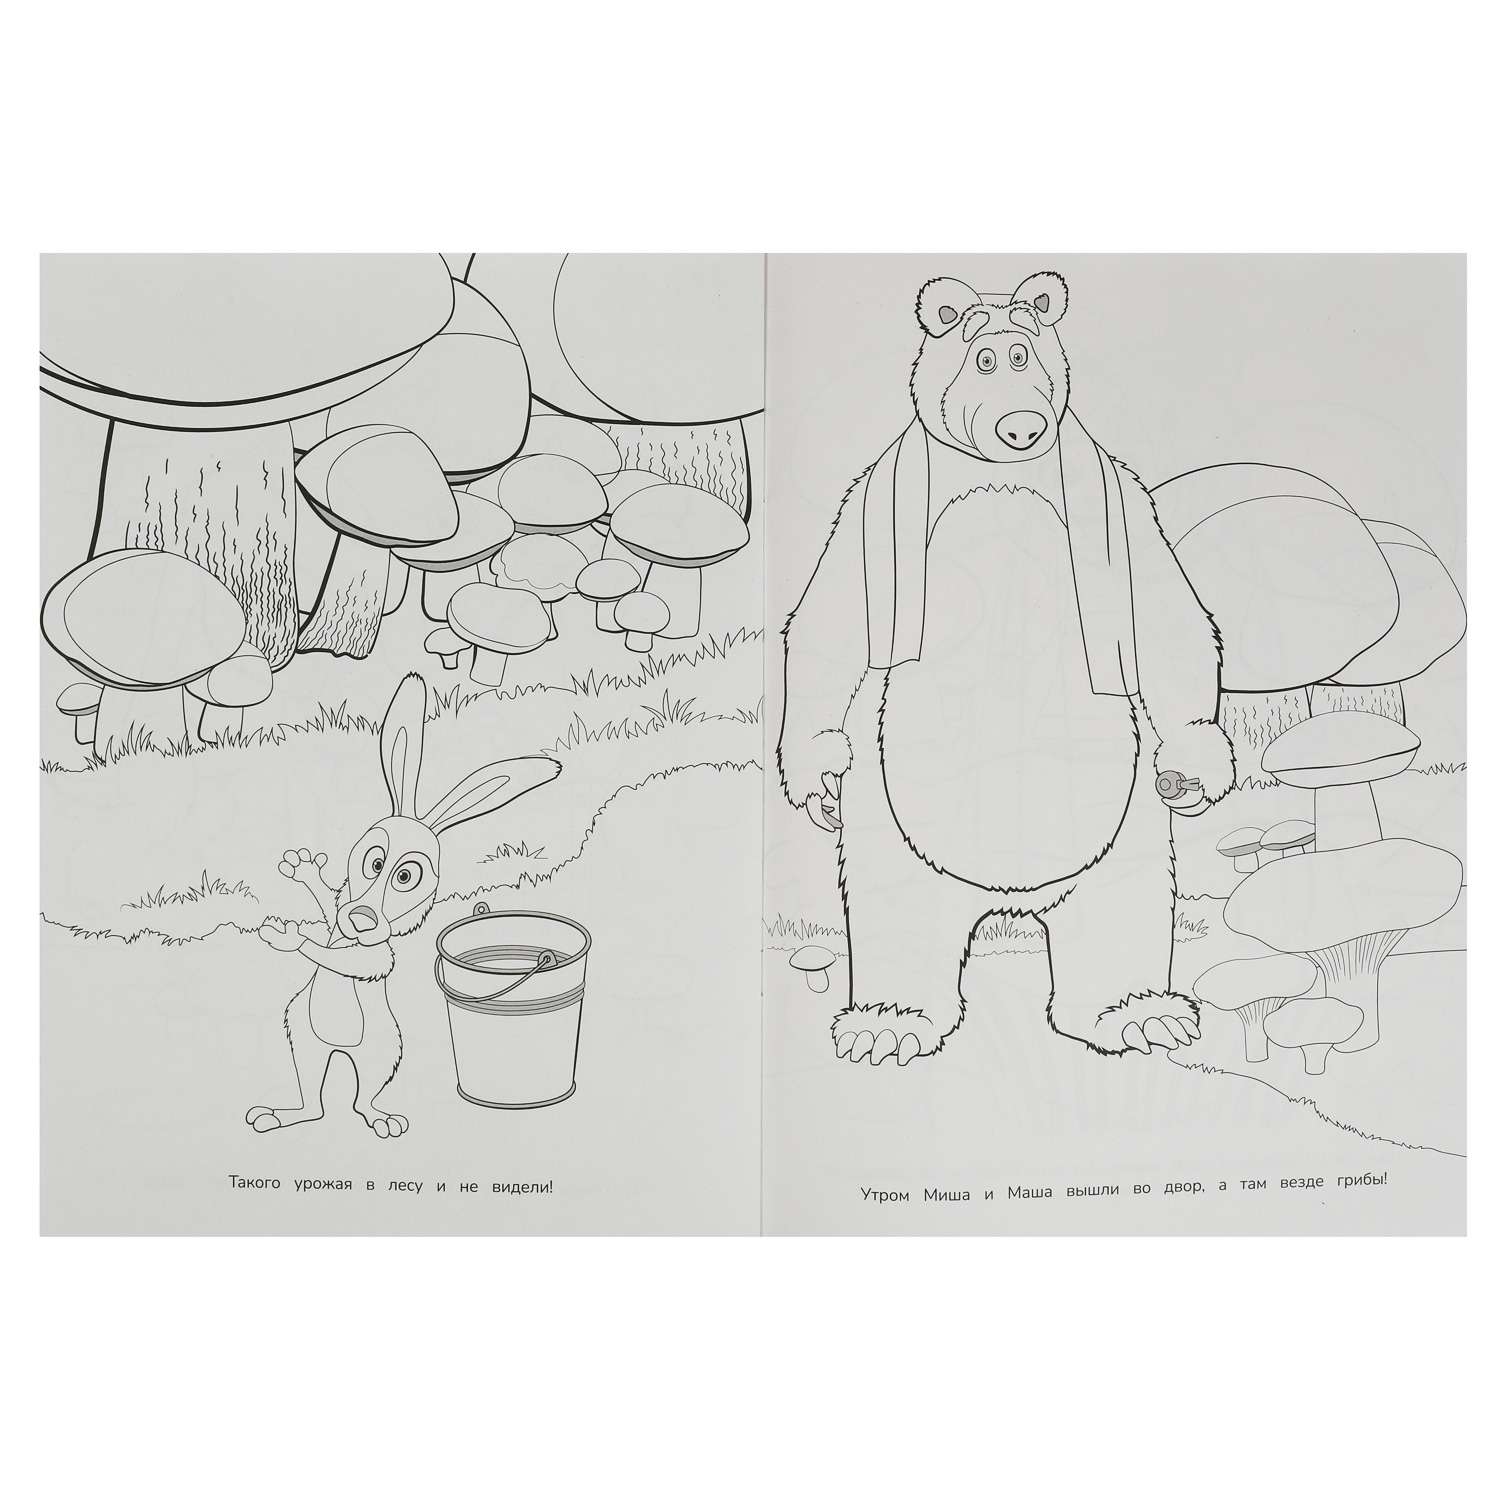 Раскраски из мультсериала Маша и Медведь.